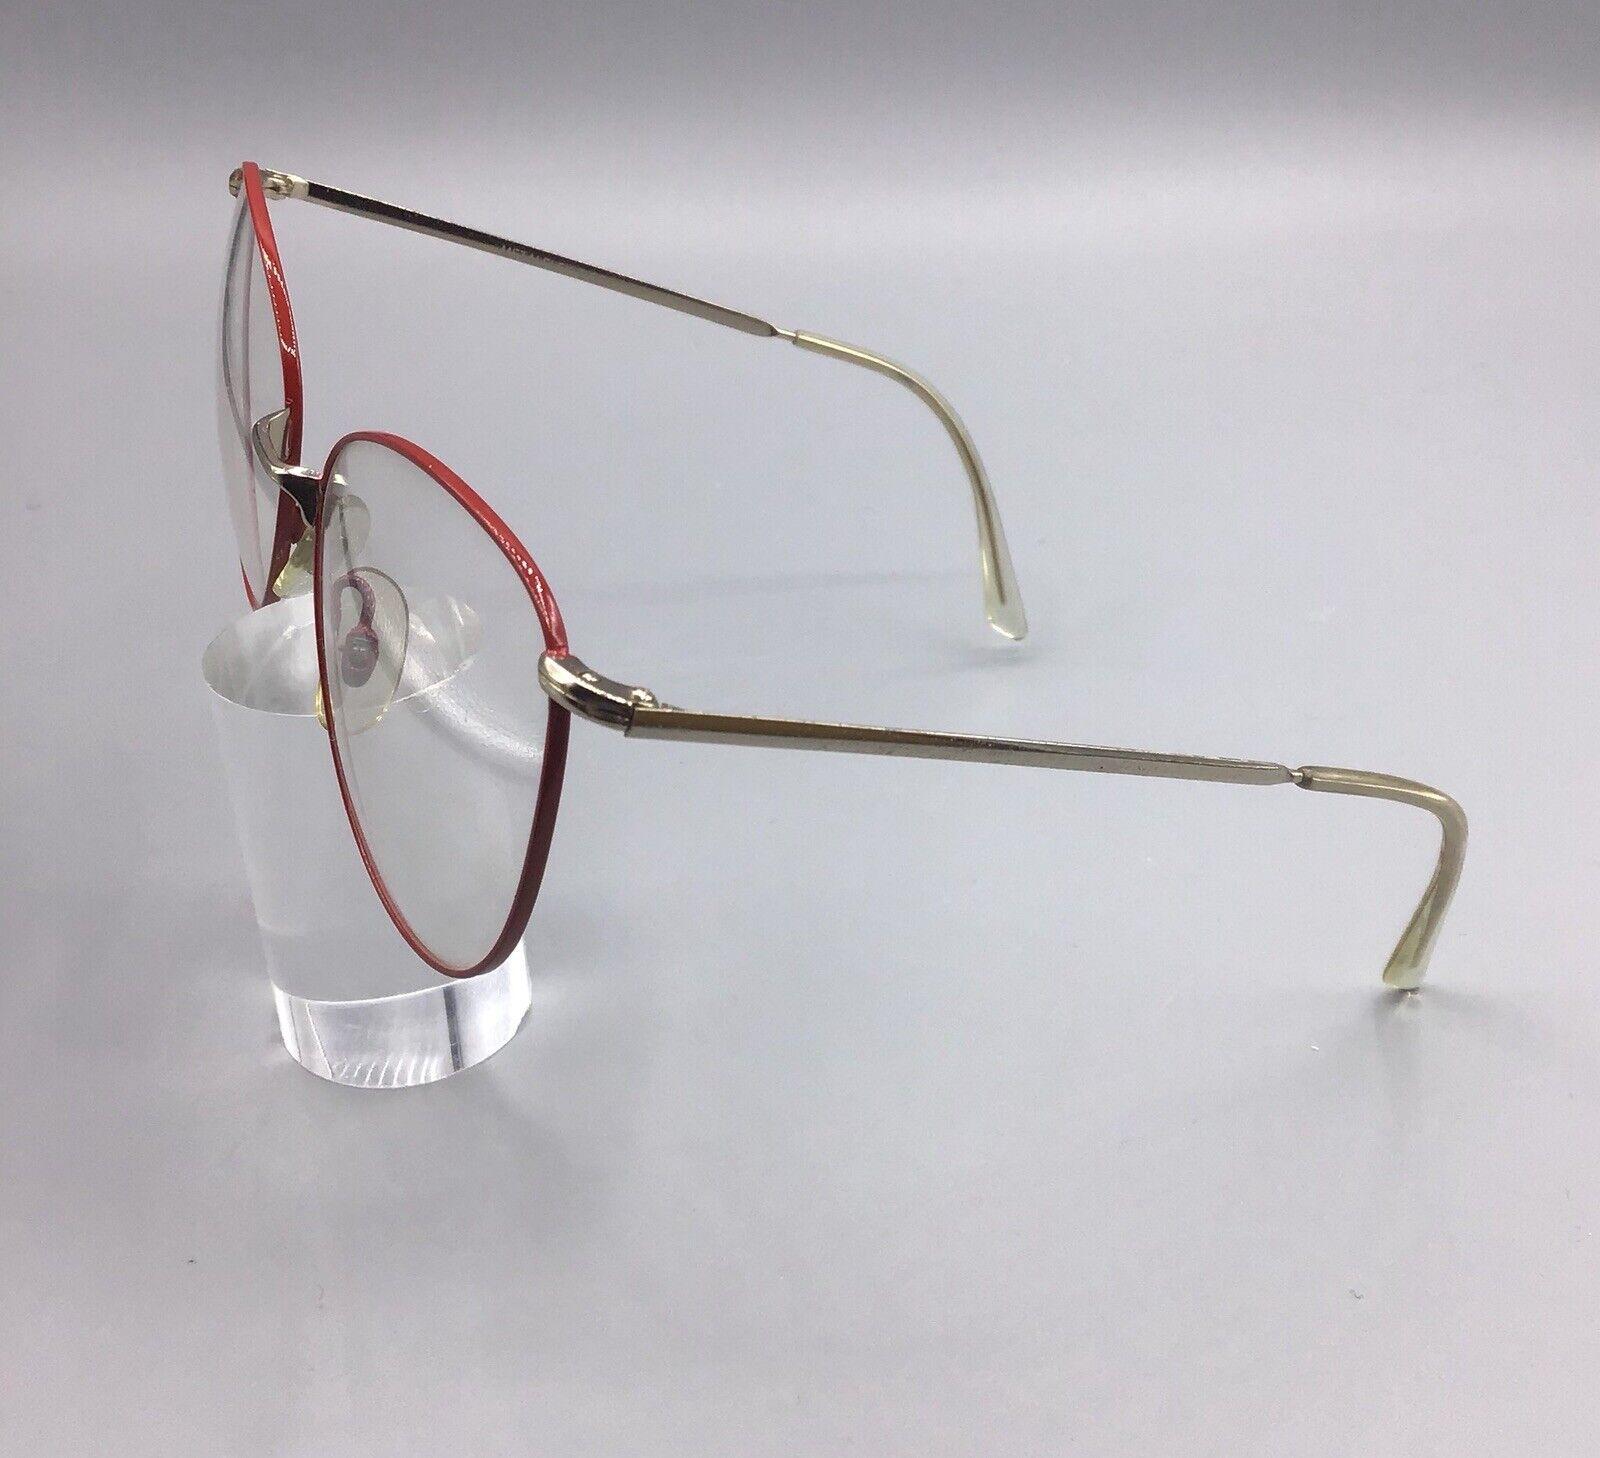 metalflex dora red occhiale vintage eyewear frame brillen lunettes